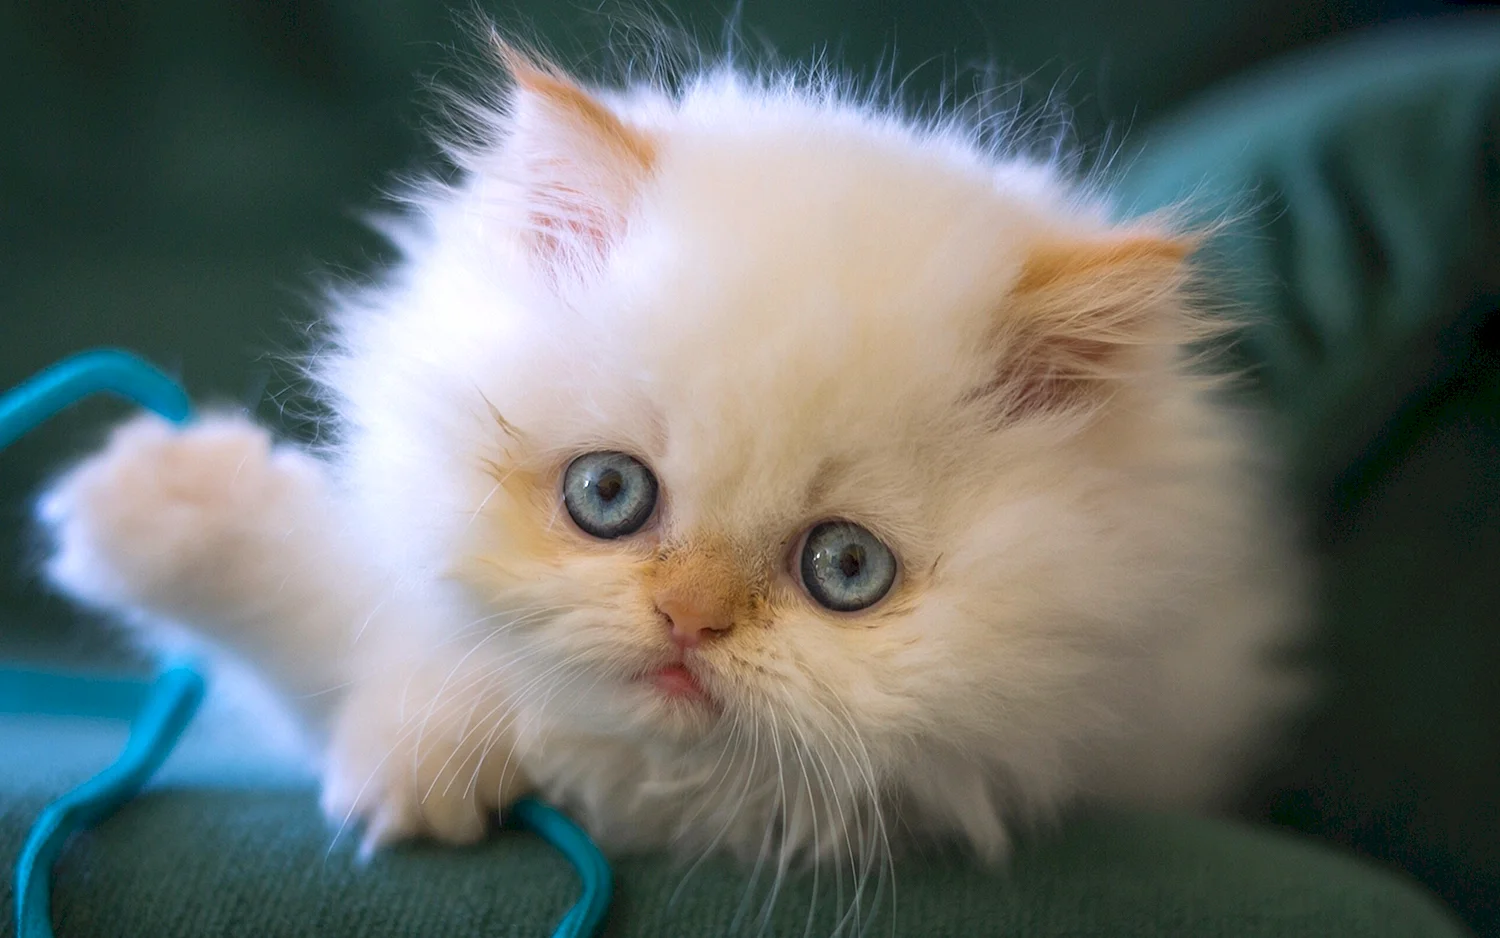 Персидский пушистый белый кот с голубыми глазами